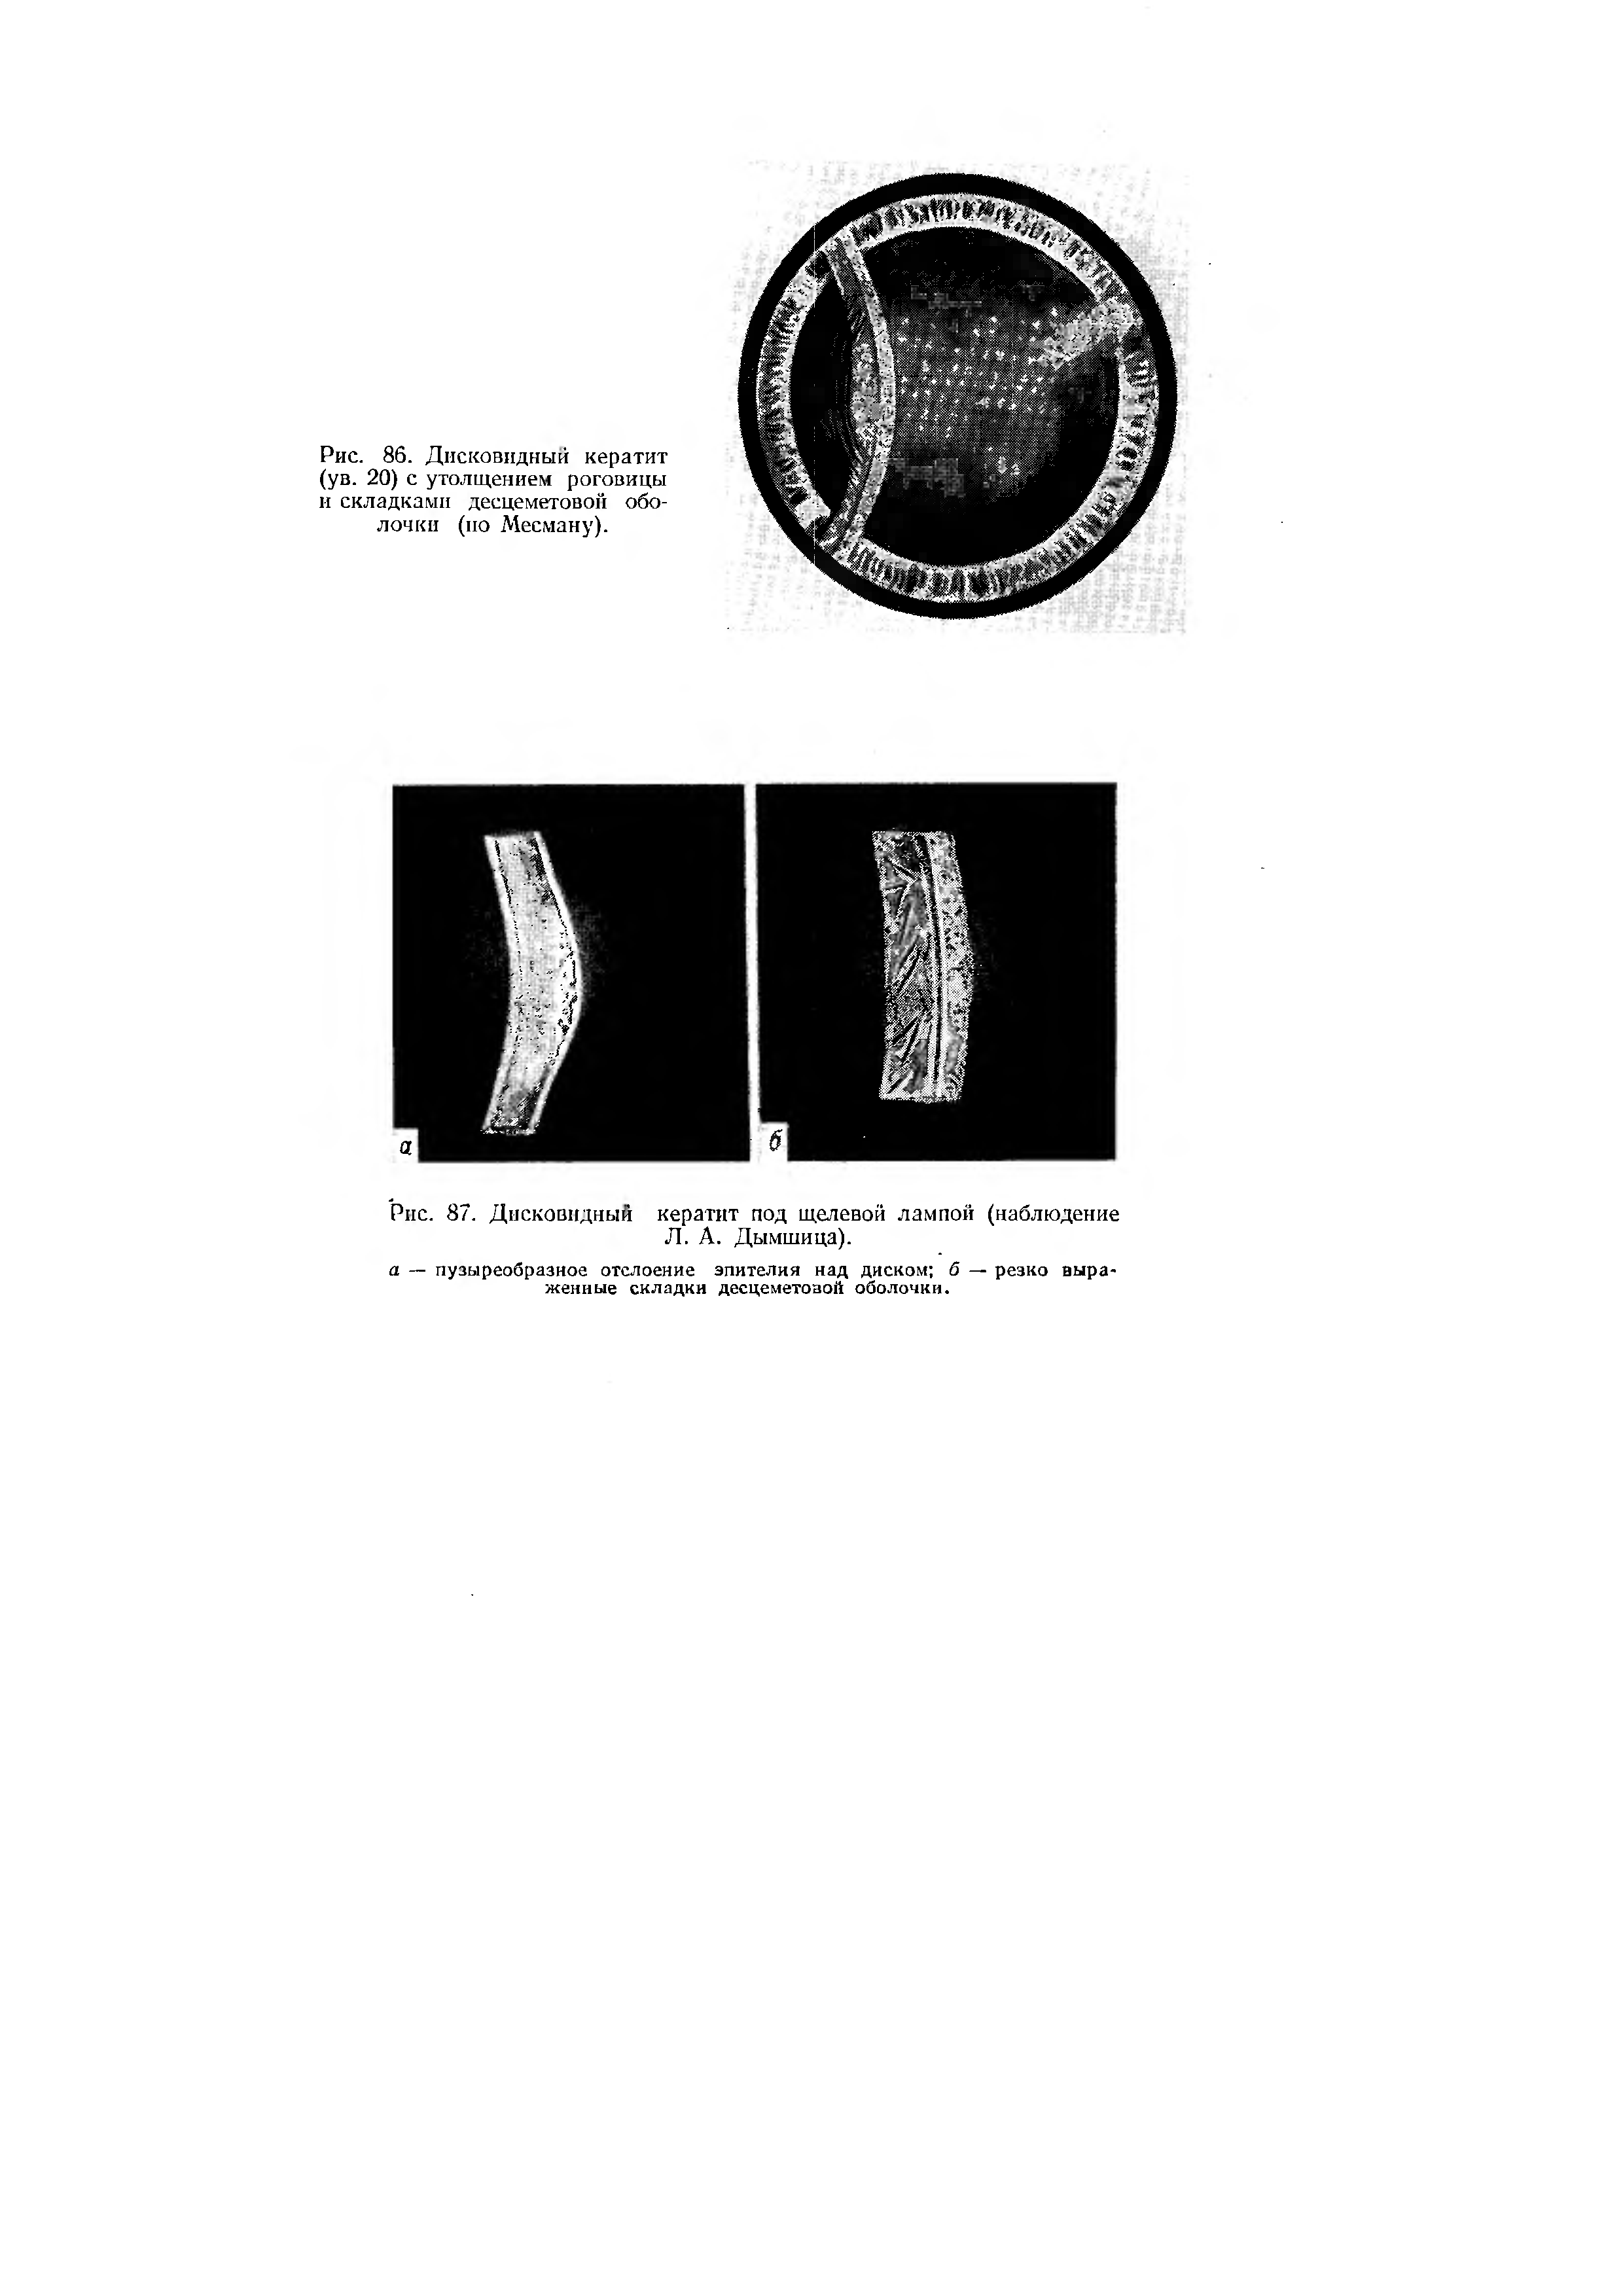 Рис. 87. Дисковидный кератит под щелевой лампой (наблюдение Л. А. Дымшица).